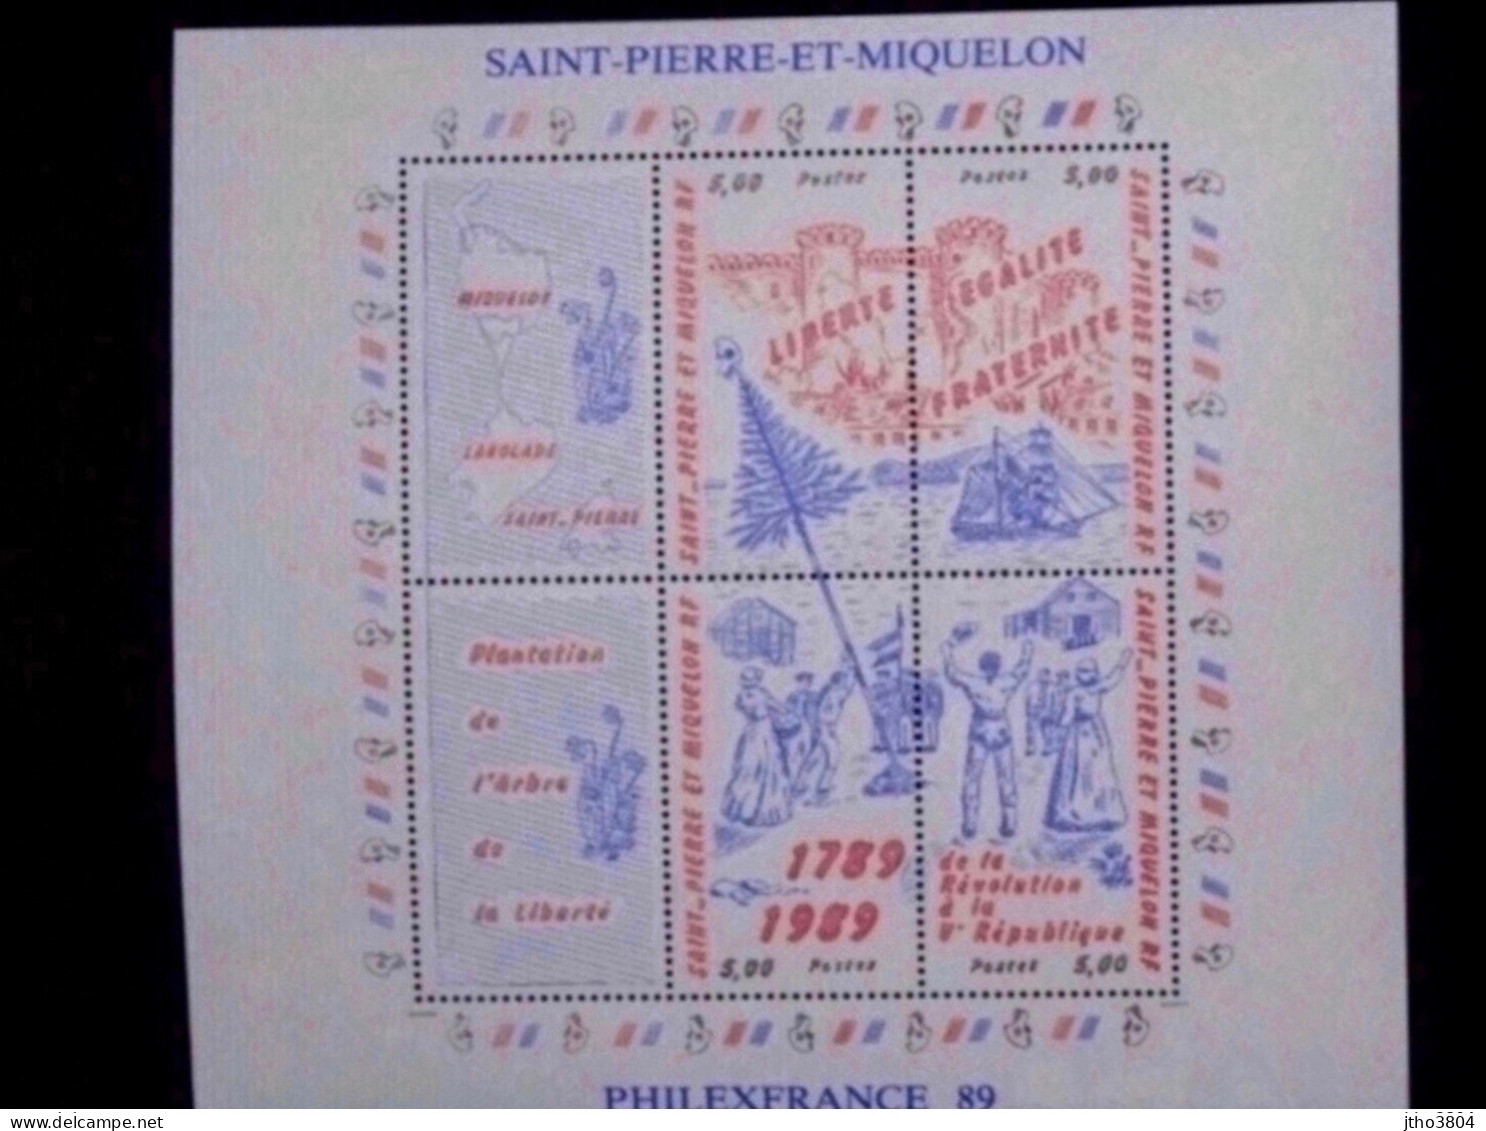 Saint Pierre Et Miquelon -Philexfrance 89 - Bloc 3 Révolution Française - BF3 - Ongebruikt